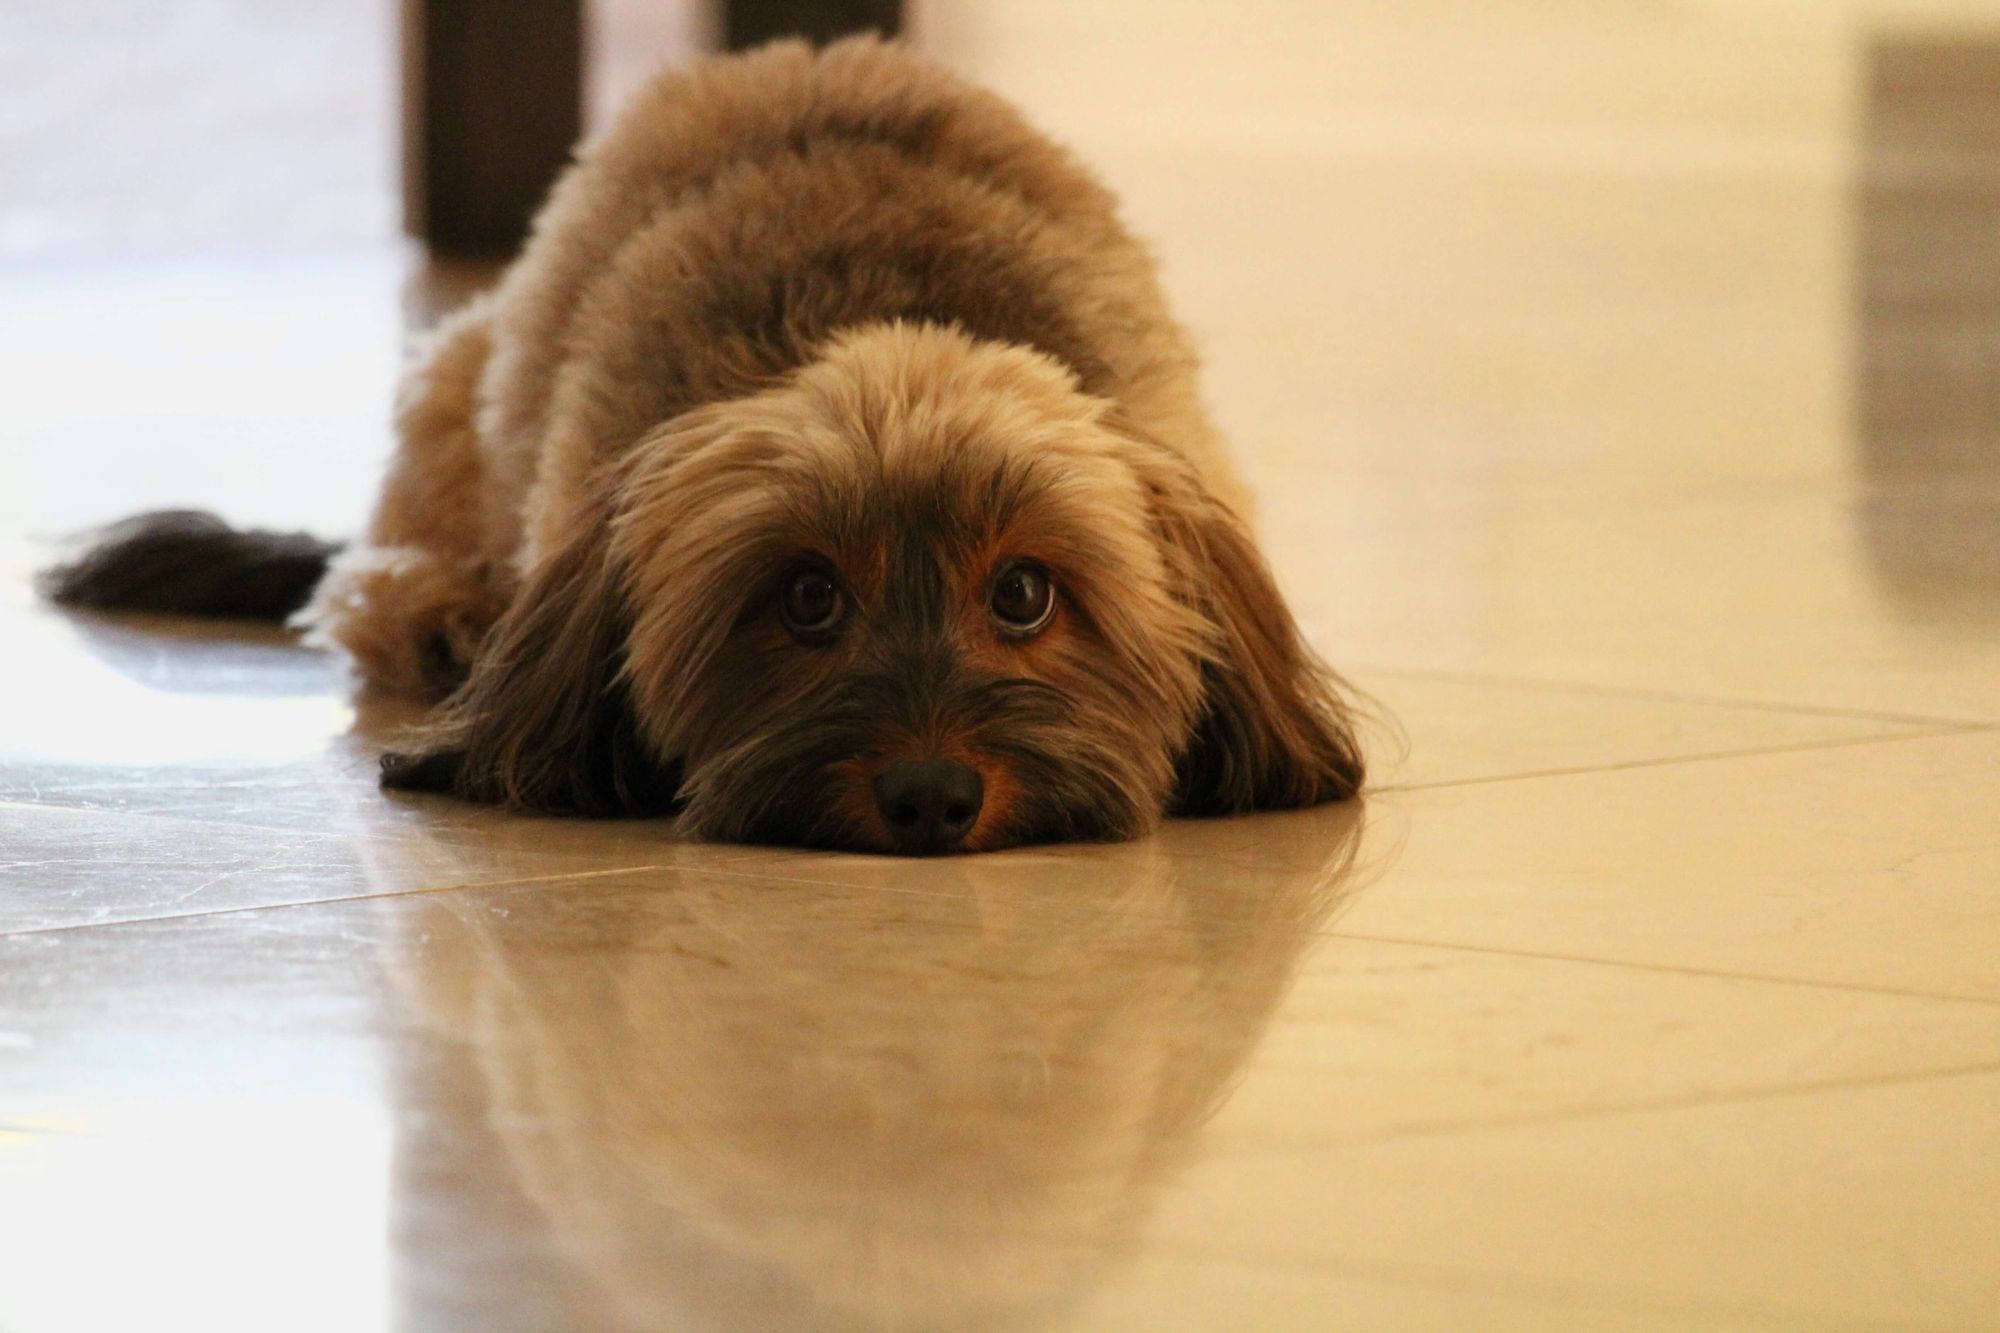 Sad dog on floor